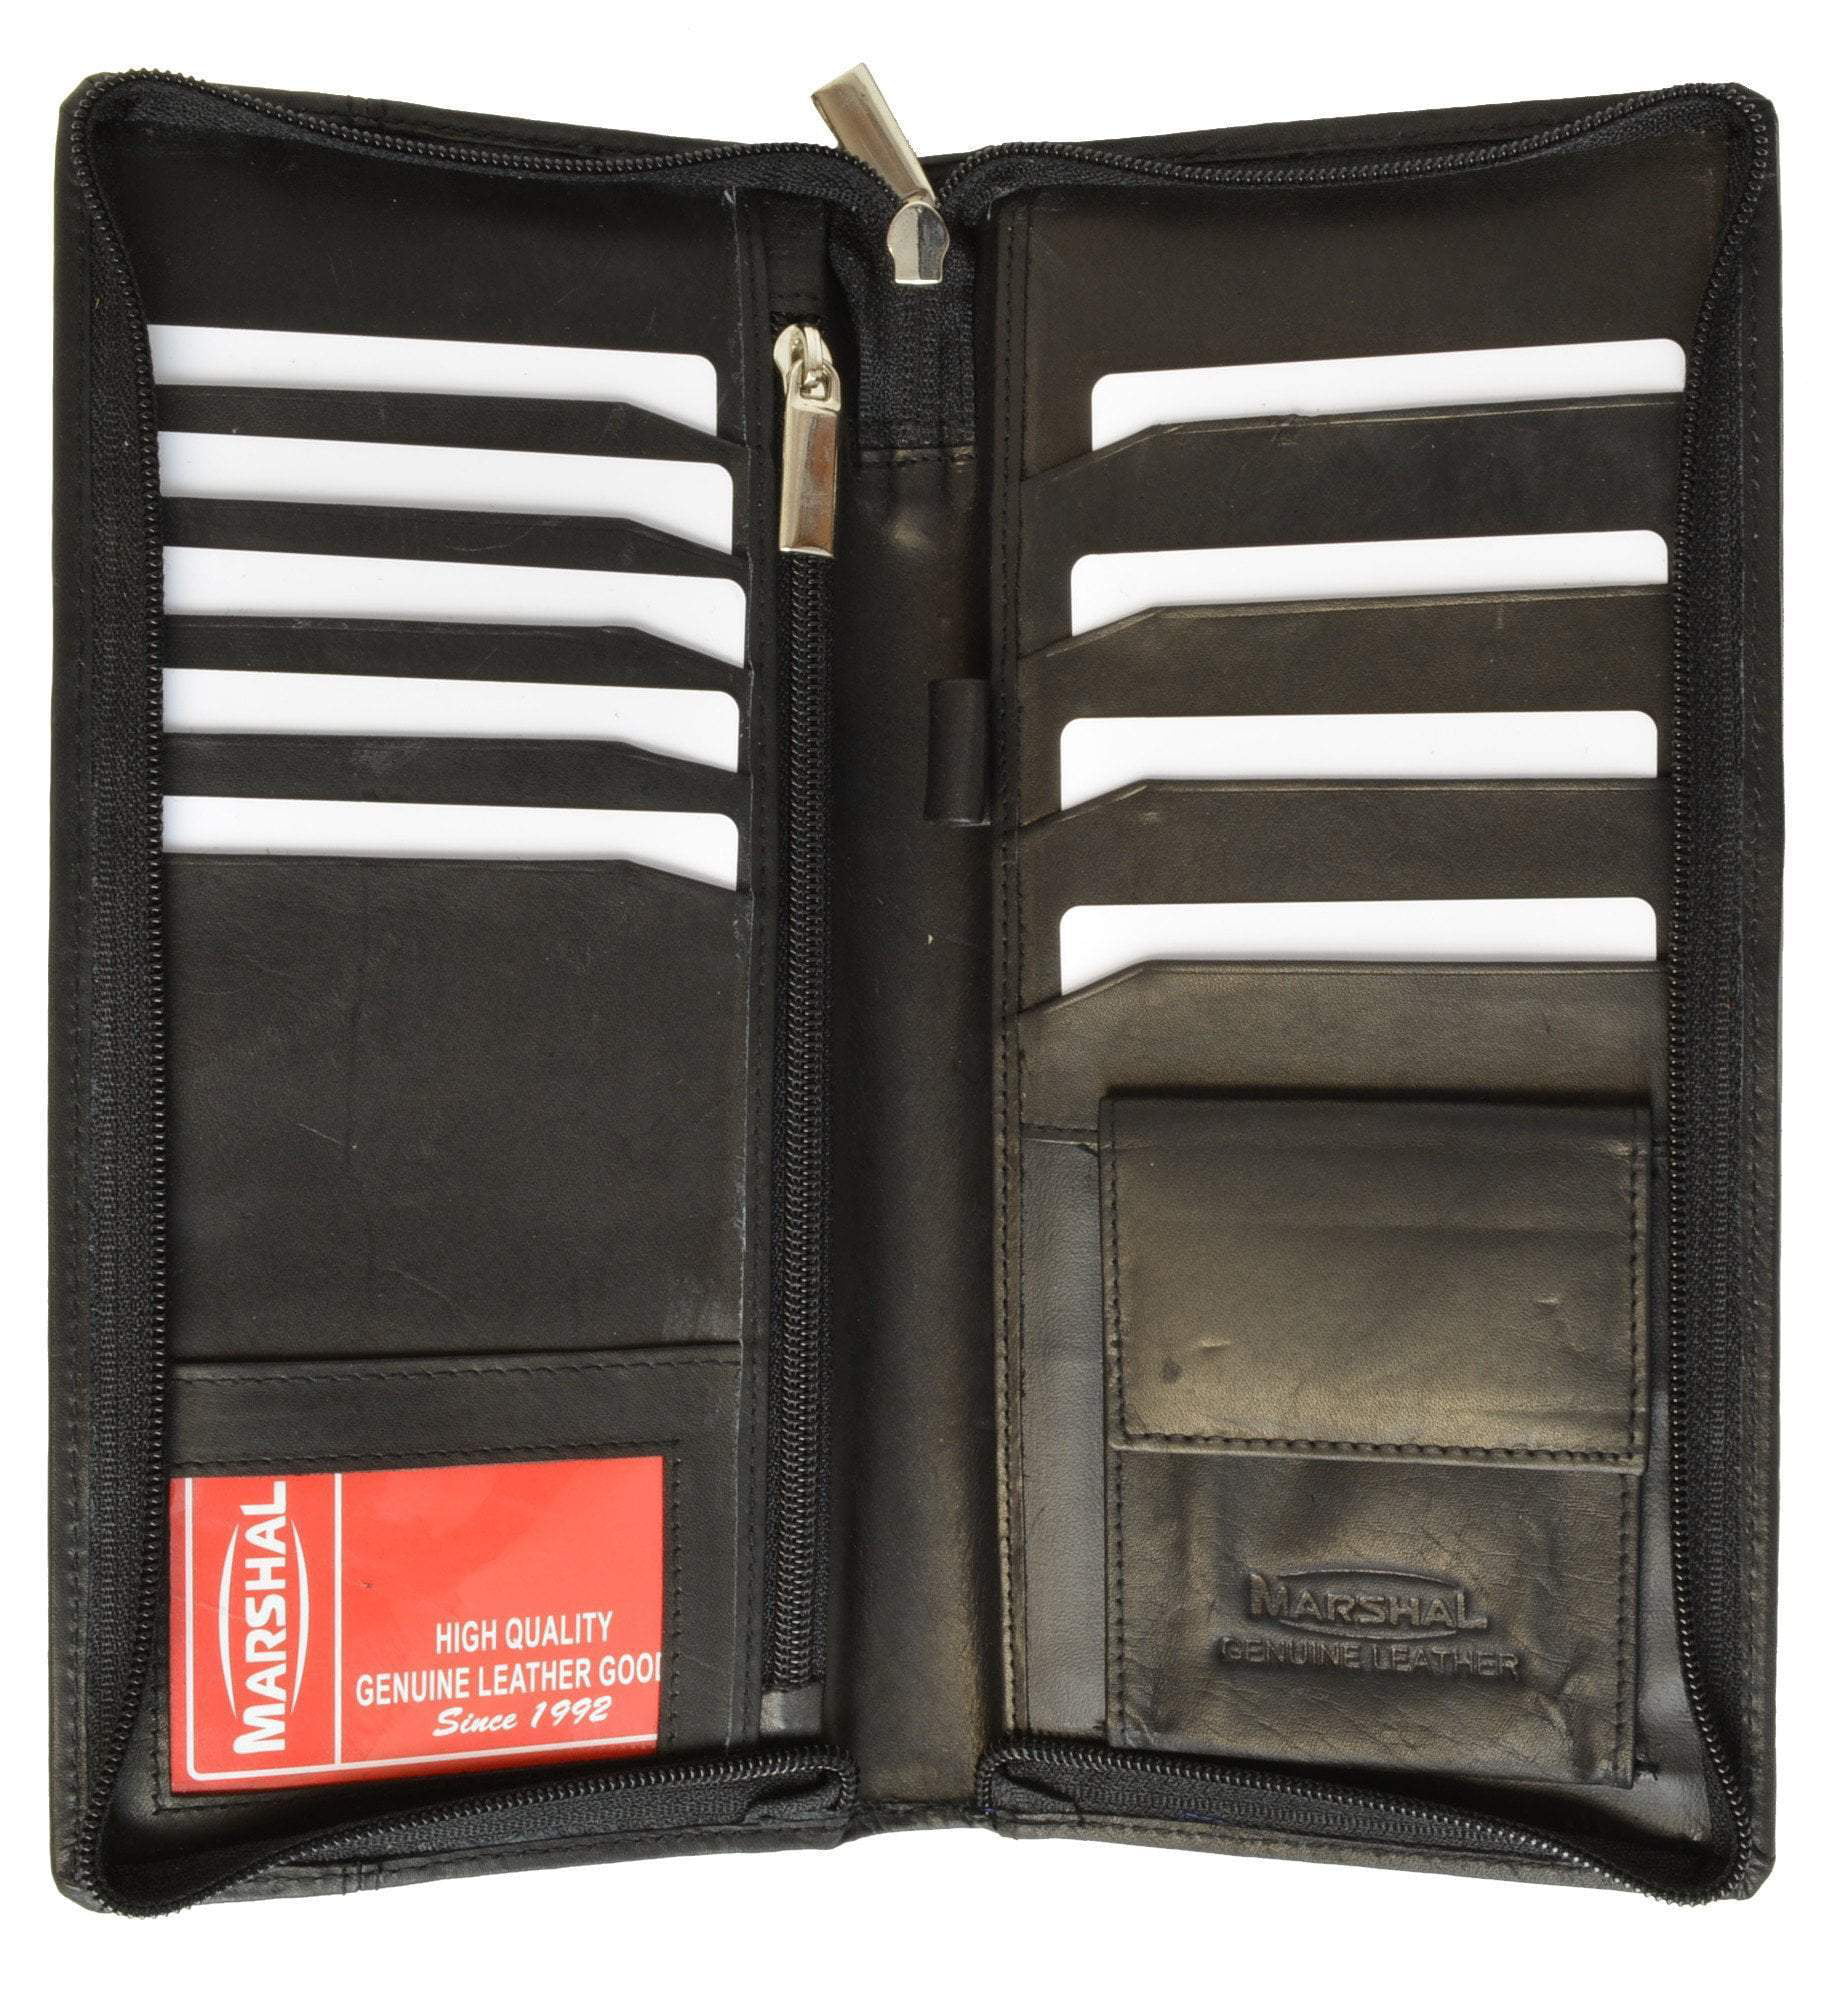 Bifold Black & Navy Genuine Leather Large Travel Passport Zip-Around Wallet